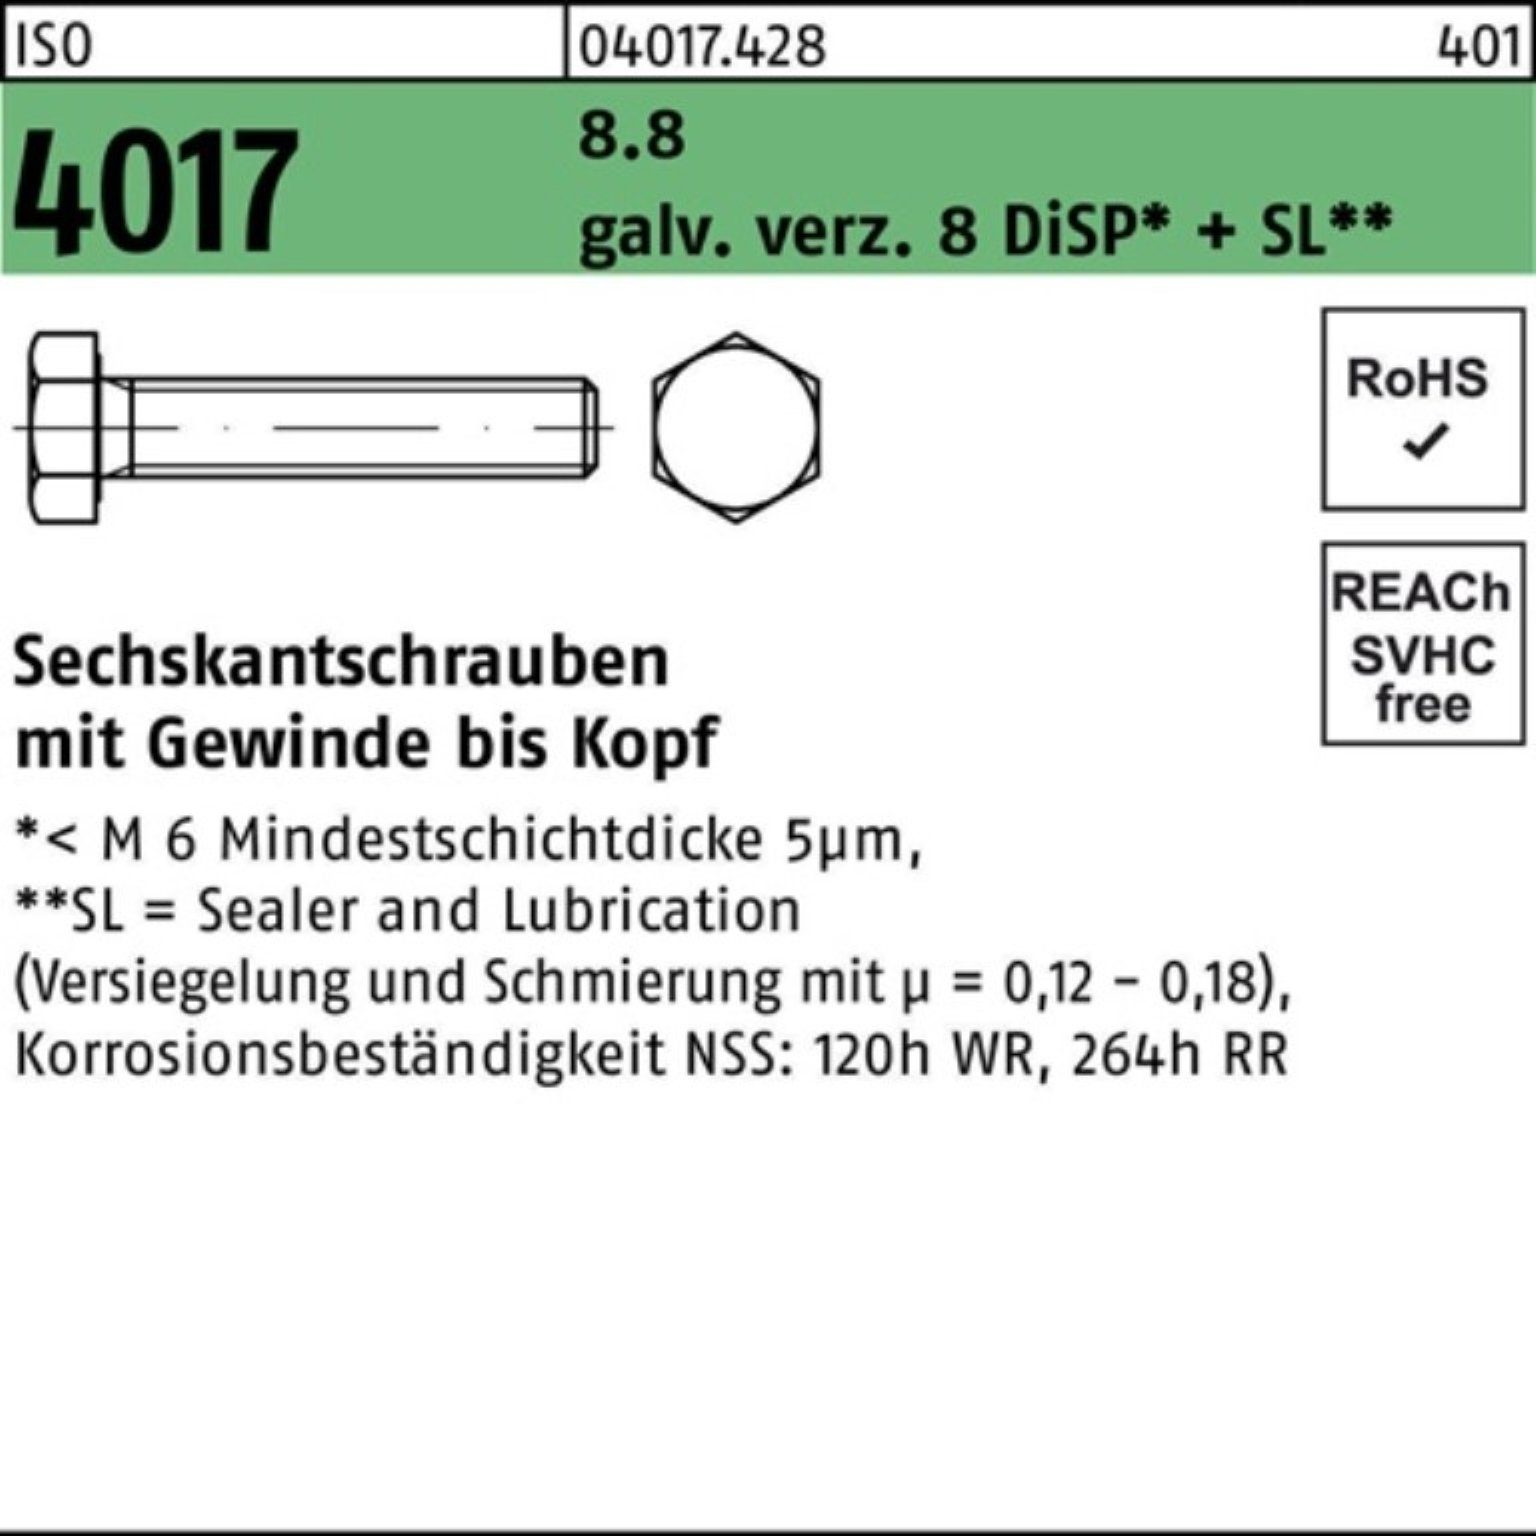 Bufab Sechskantschraube 100er Pack Sechskantschraube ISO 4017 VG M20x 40 8.8 galv.verz. 8 DiSP